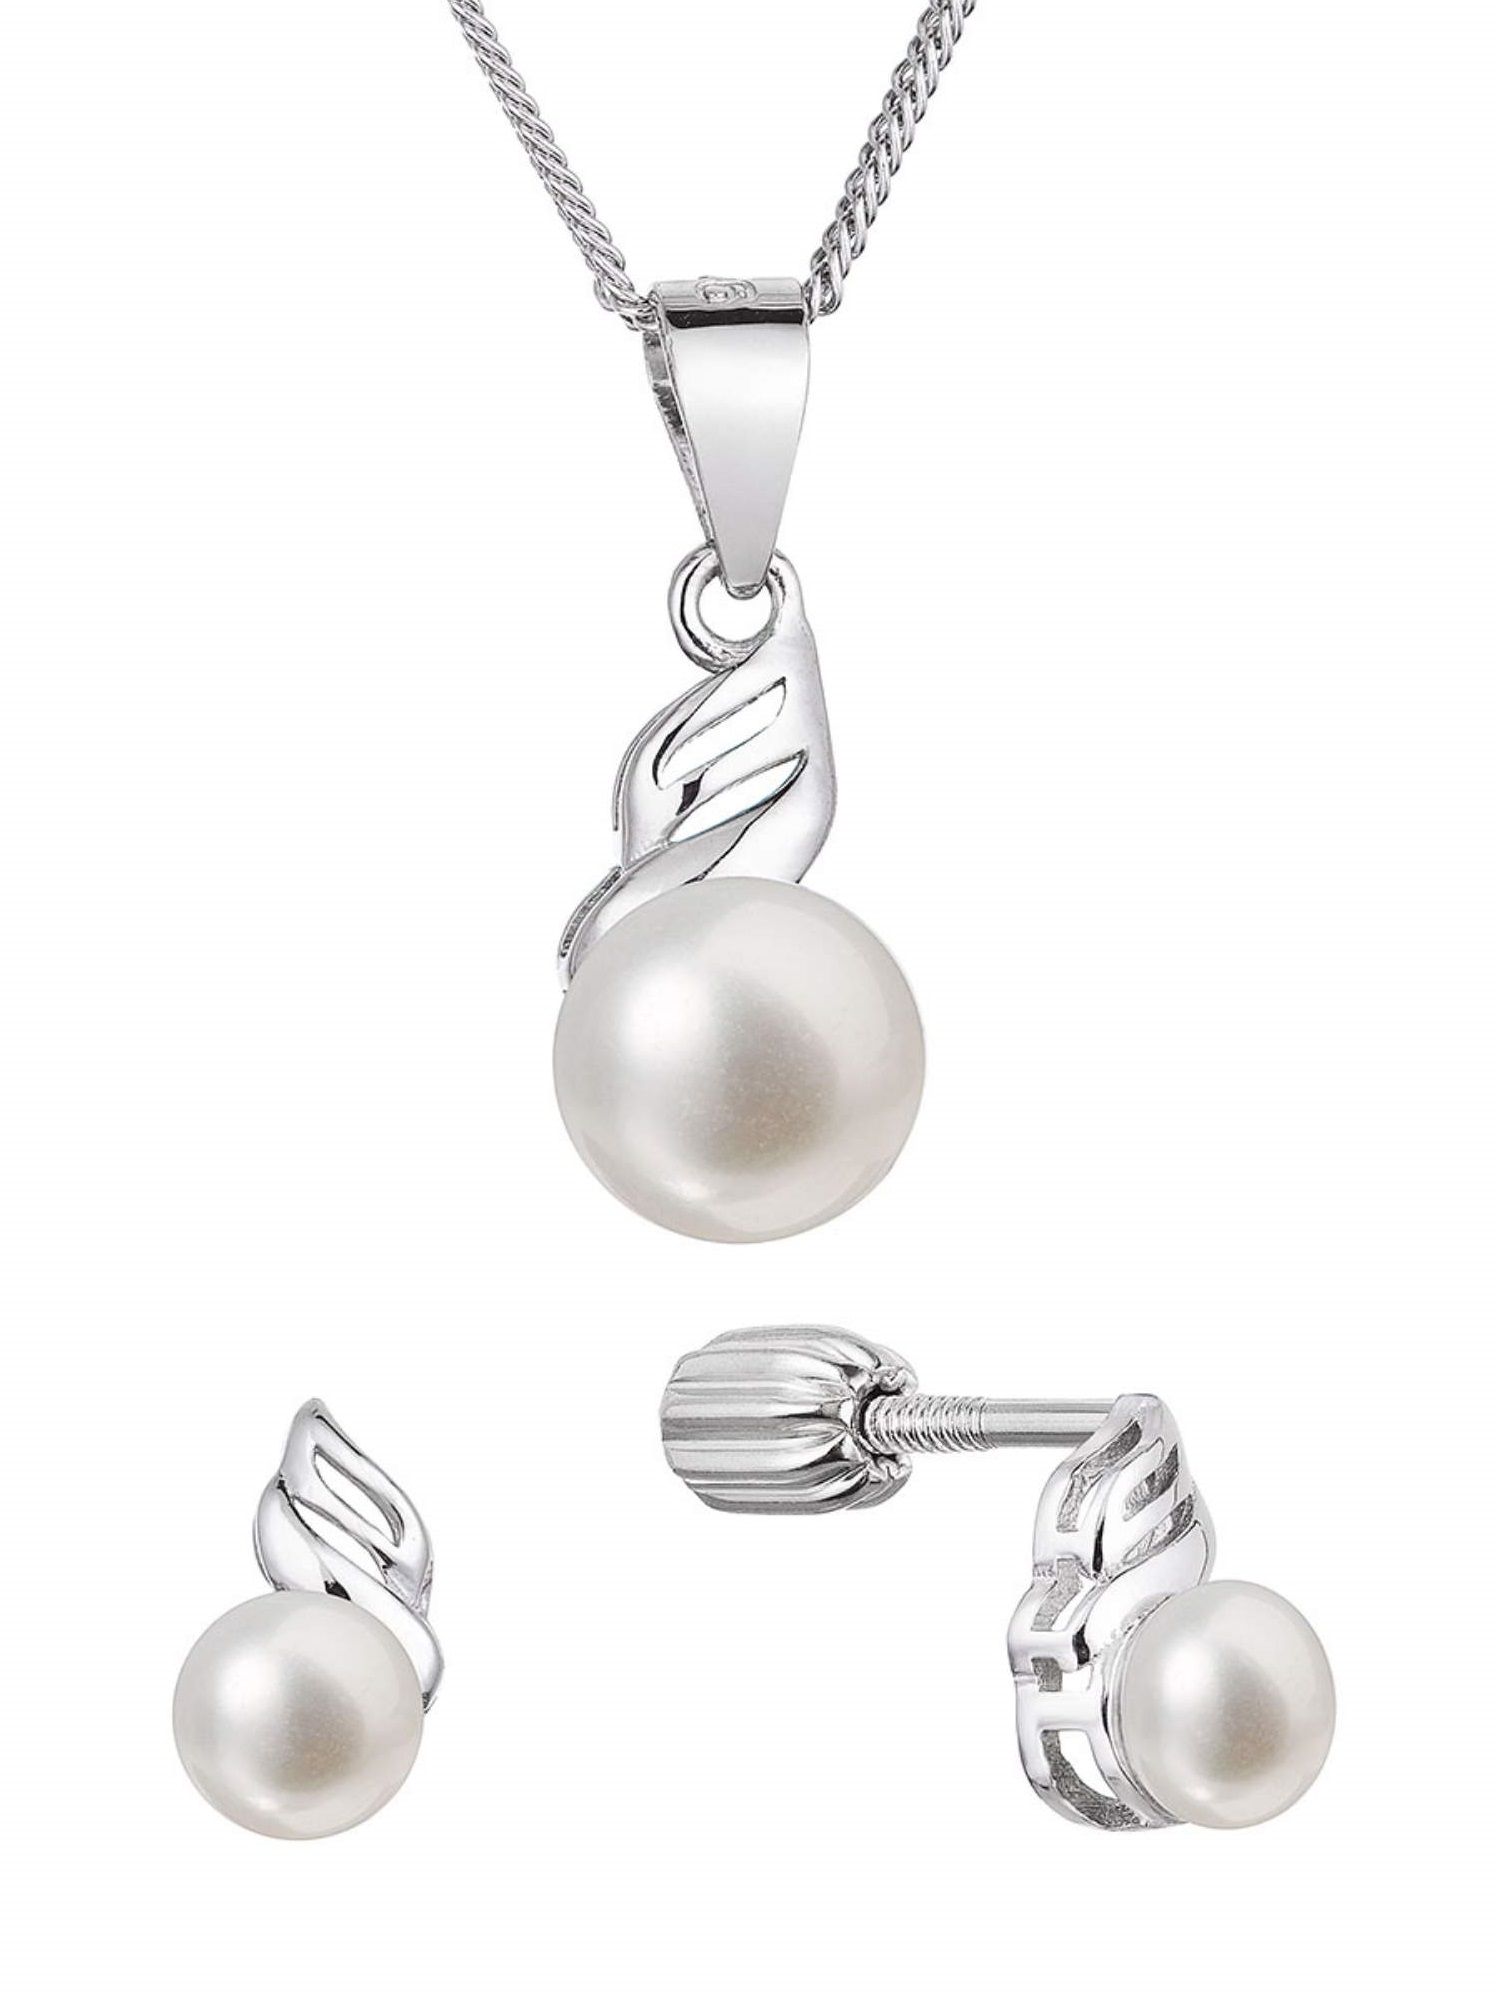 Evolution Group Půvabná sada šperků s pravými perlami 29046.1B (náušnice, řetízek, přívěsek)